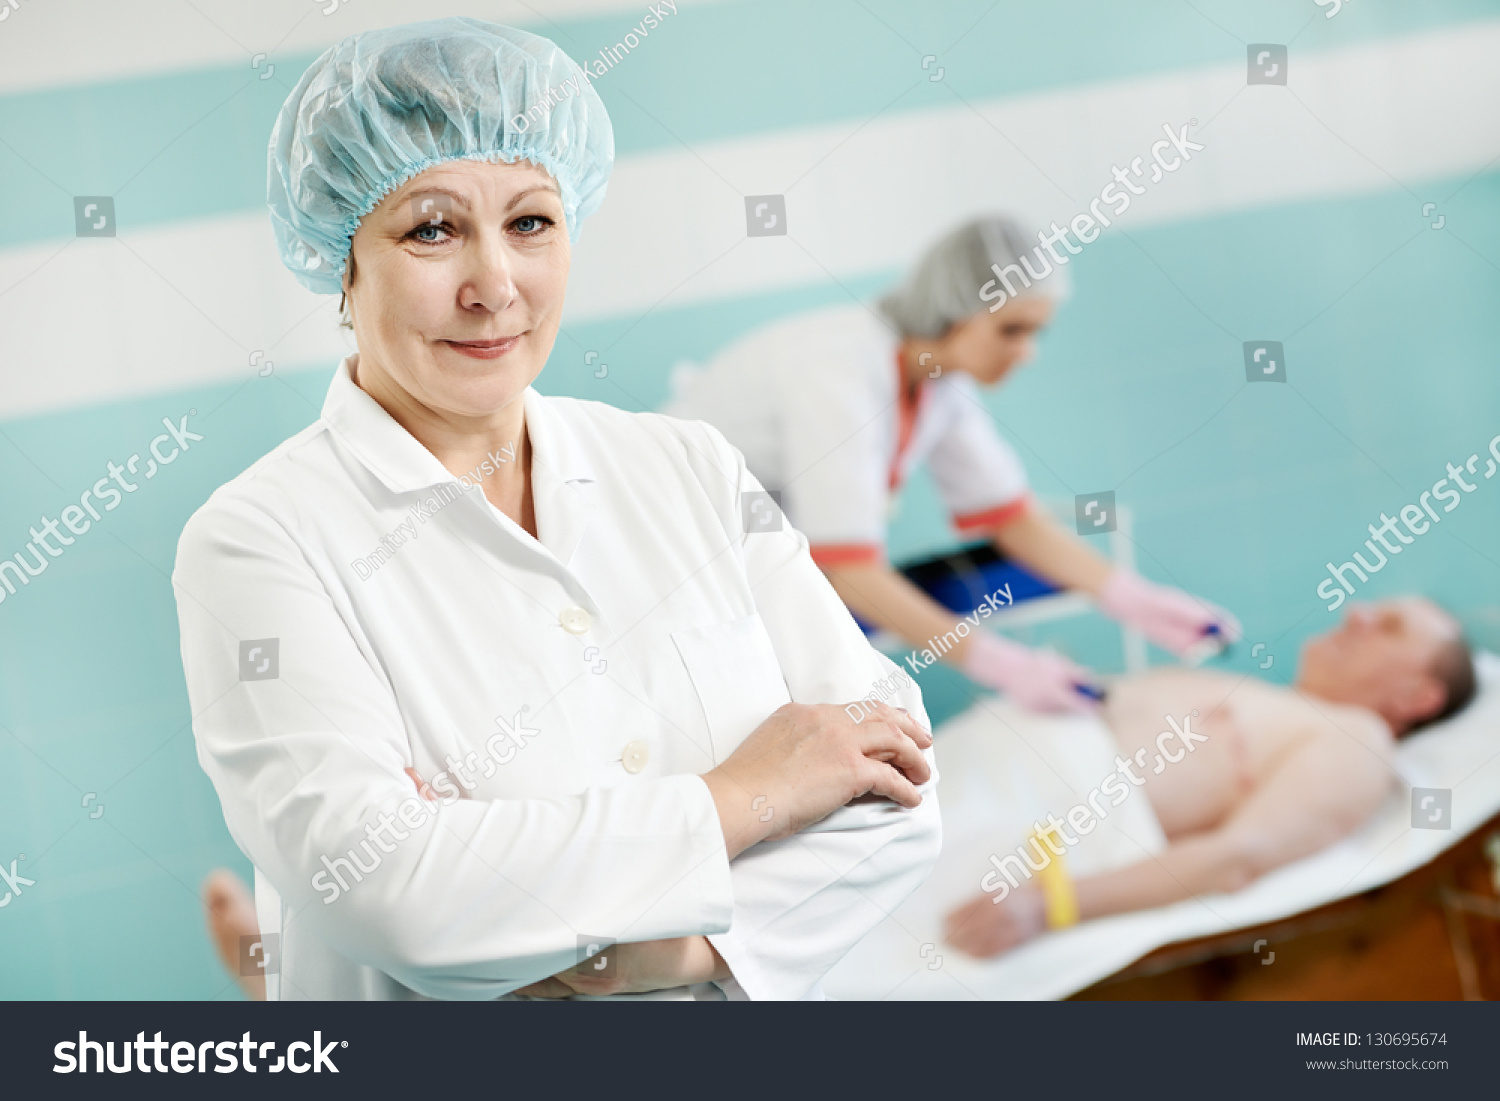 Nurse electro